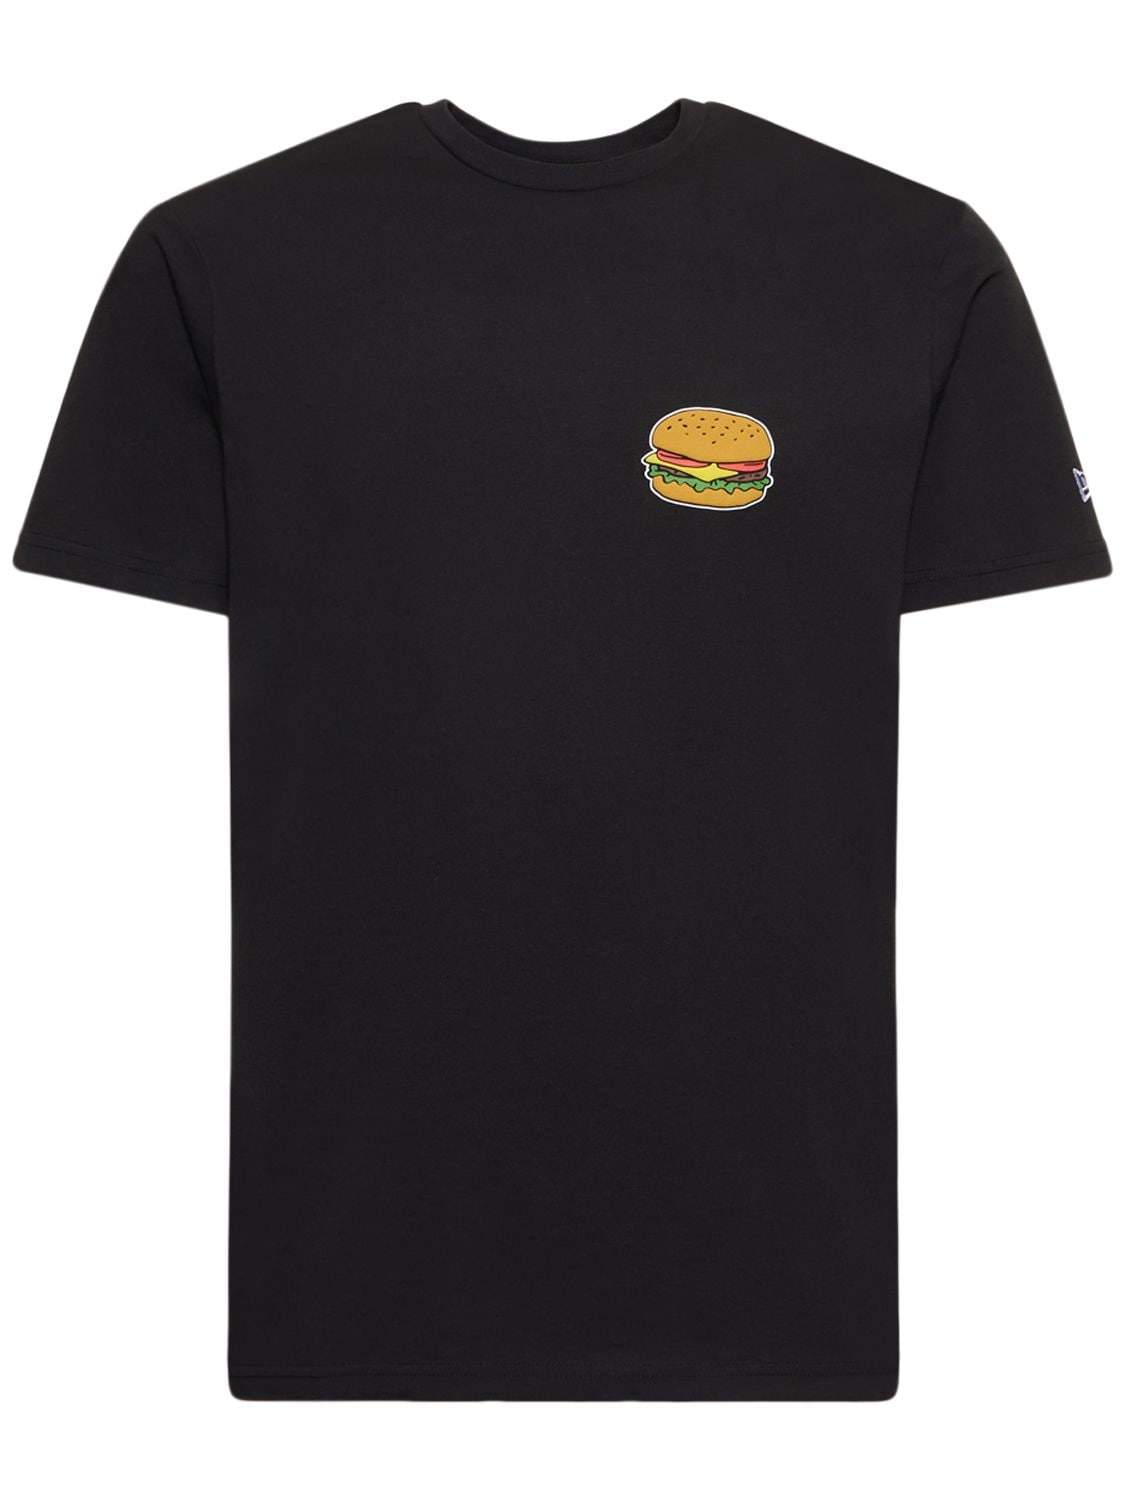 Image of Hamburger Printed Cotton T-shirt